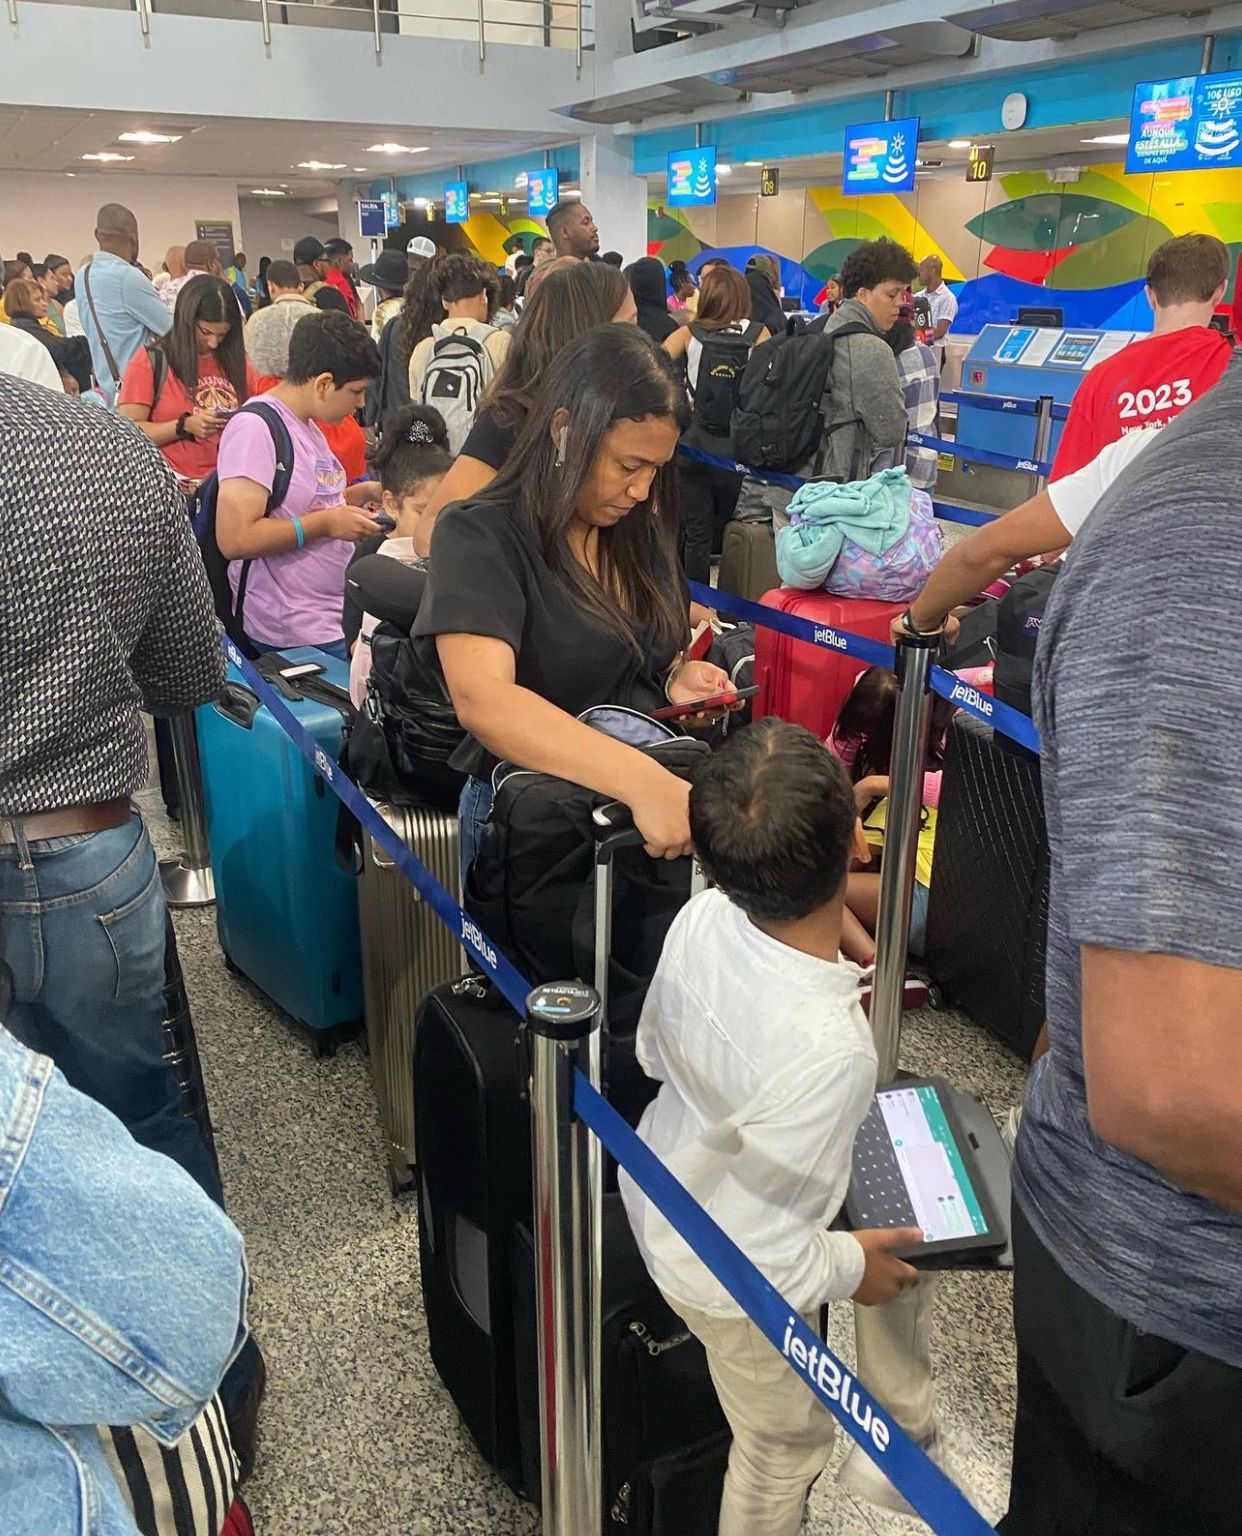 Caos y descontento en Aeropuerto Las Américas debido a retrasos de Jet Blue